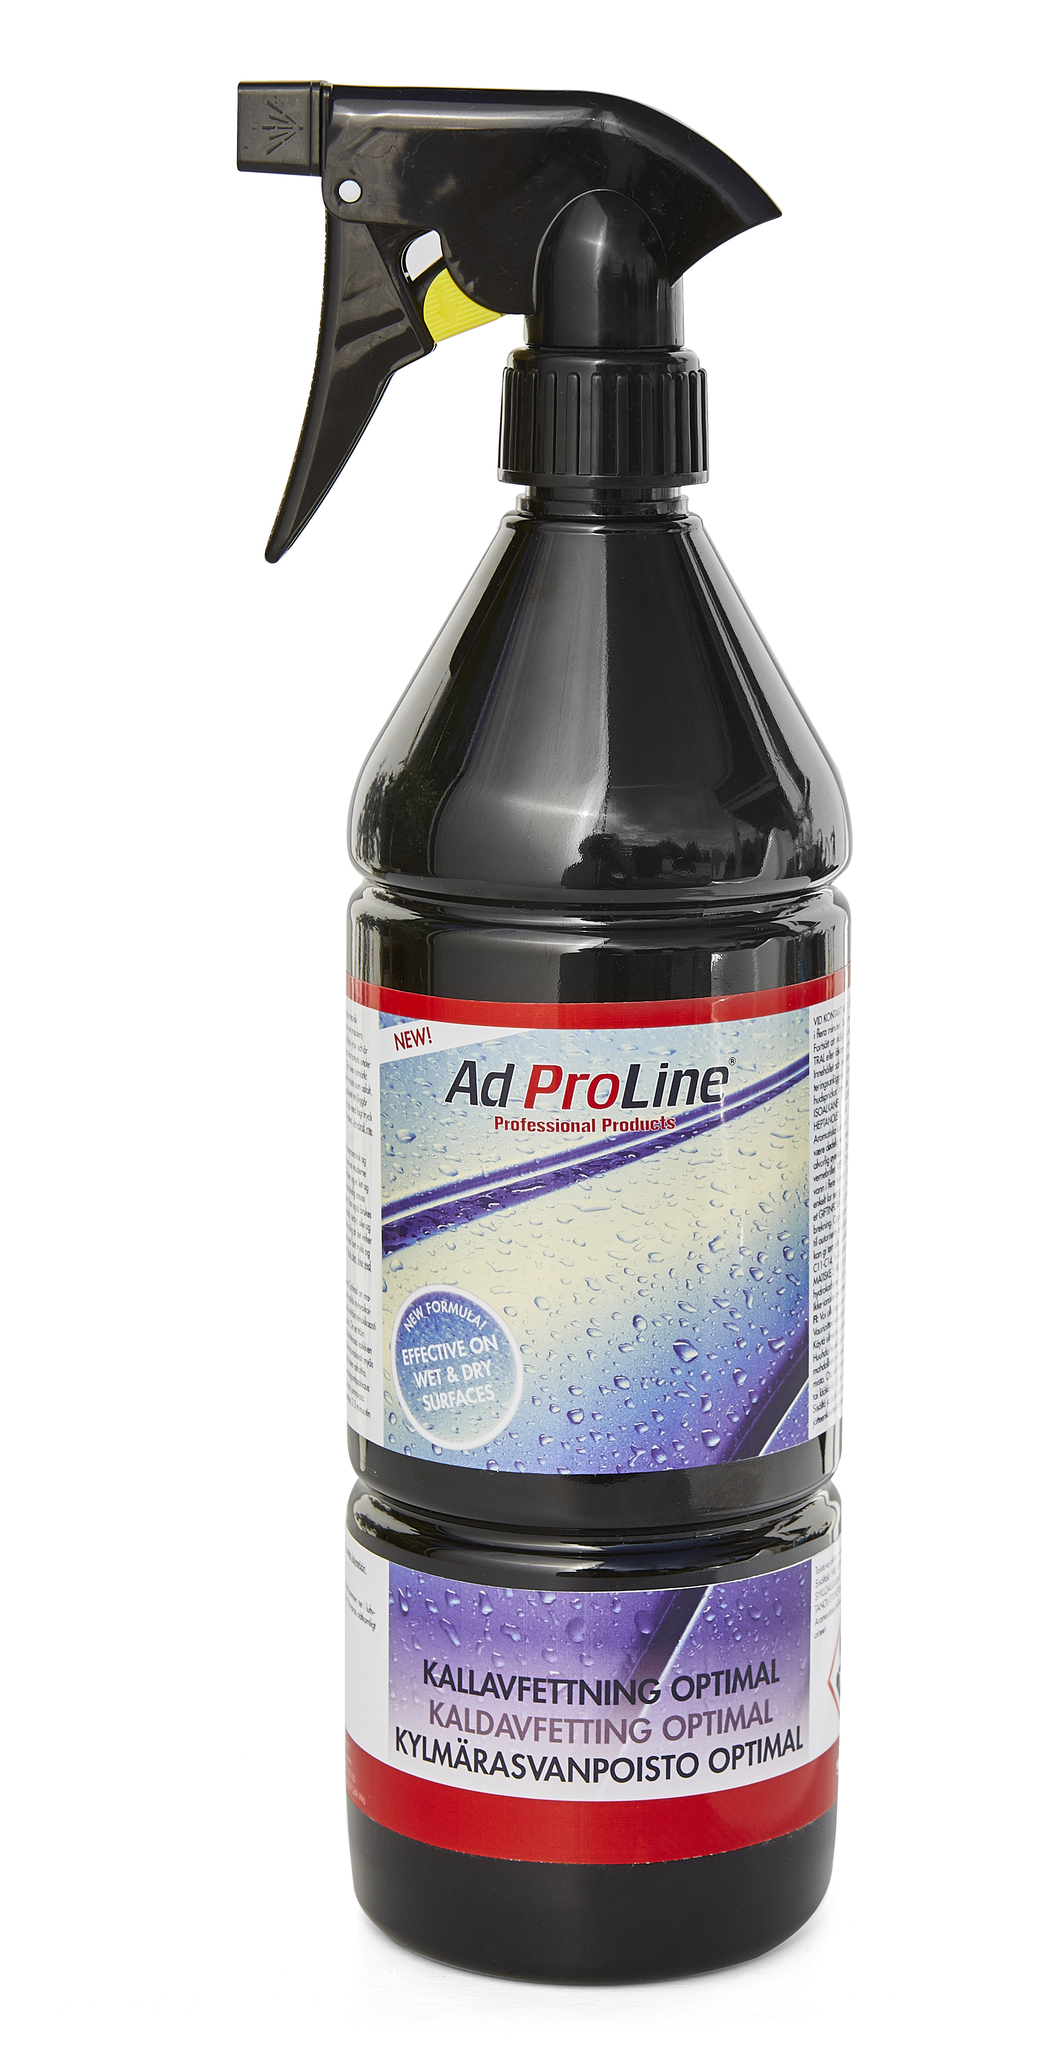 Kallavfettning Optimal AdProLine 1 liter